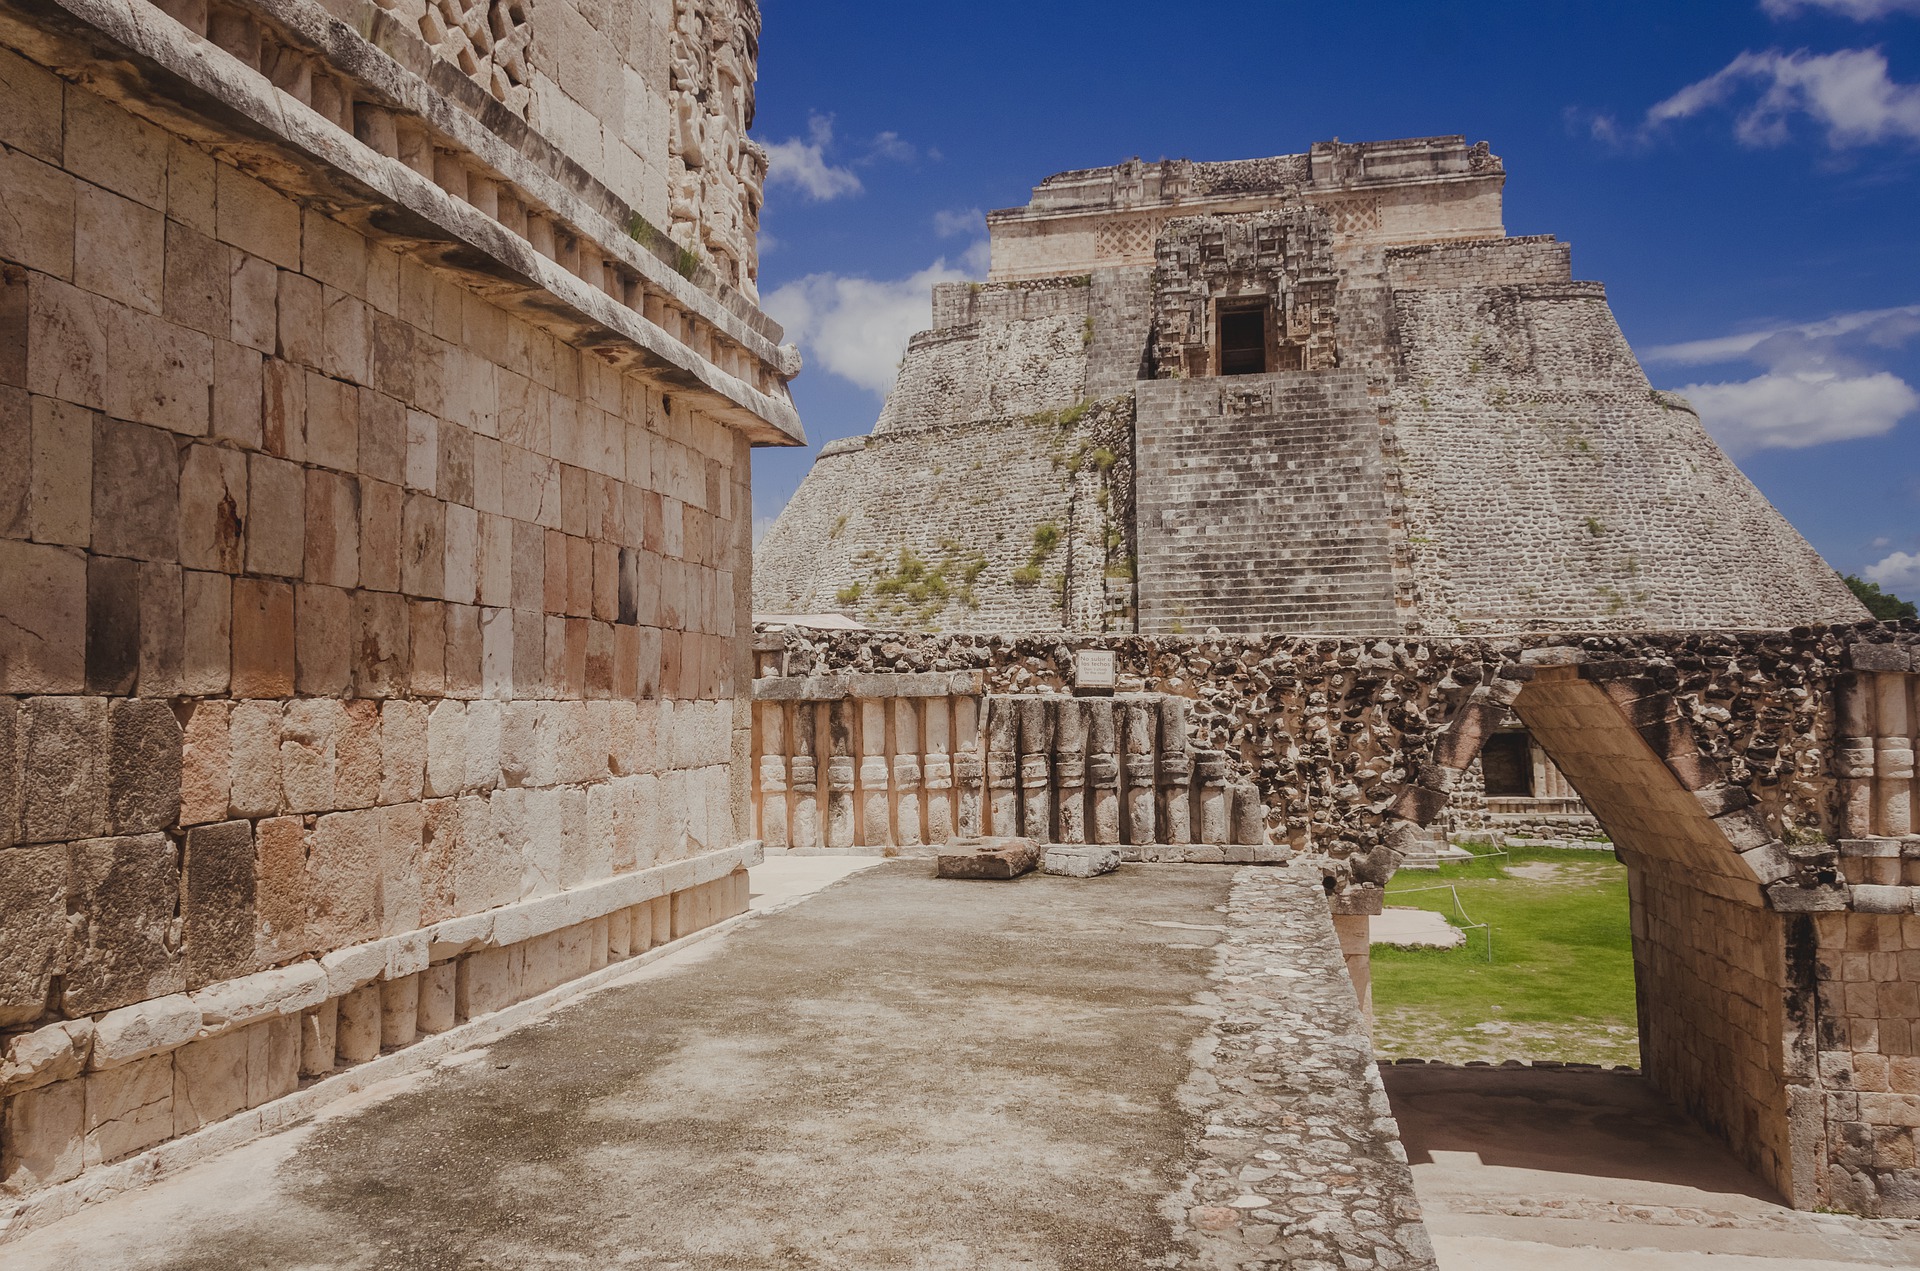 Uxmal Ruins in Yucatan